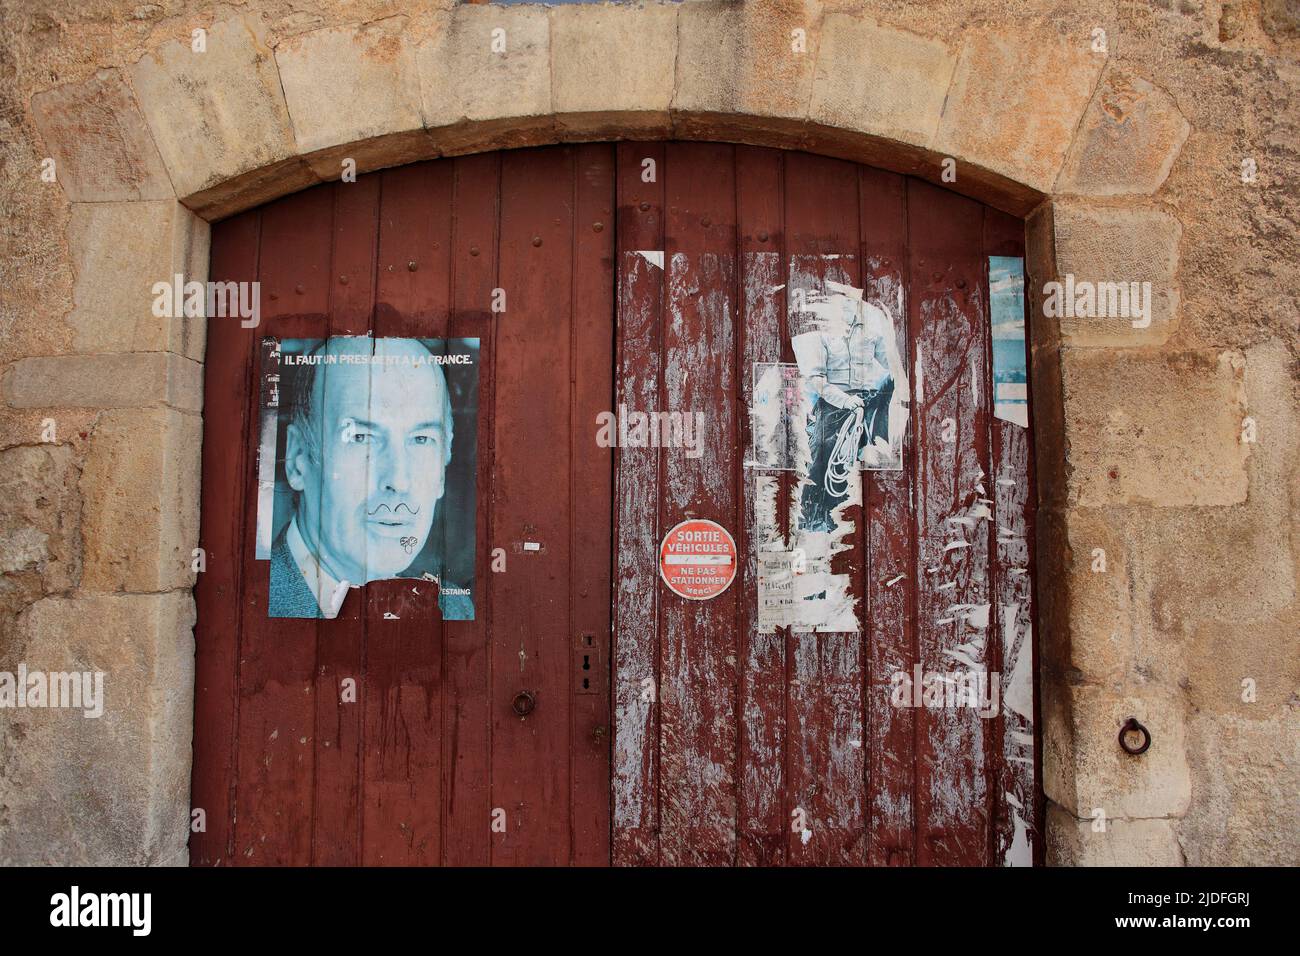 Affiche Valery Giscard d'Estaing 'Il faut un président à la France' avec une moustache sur une porte de garage en bois Stock Photo